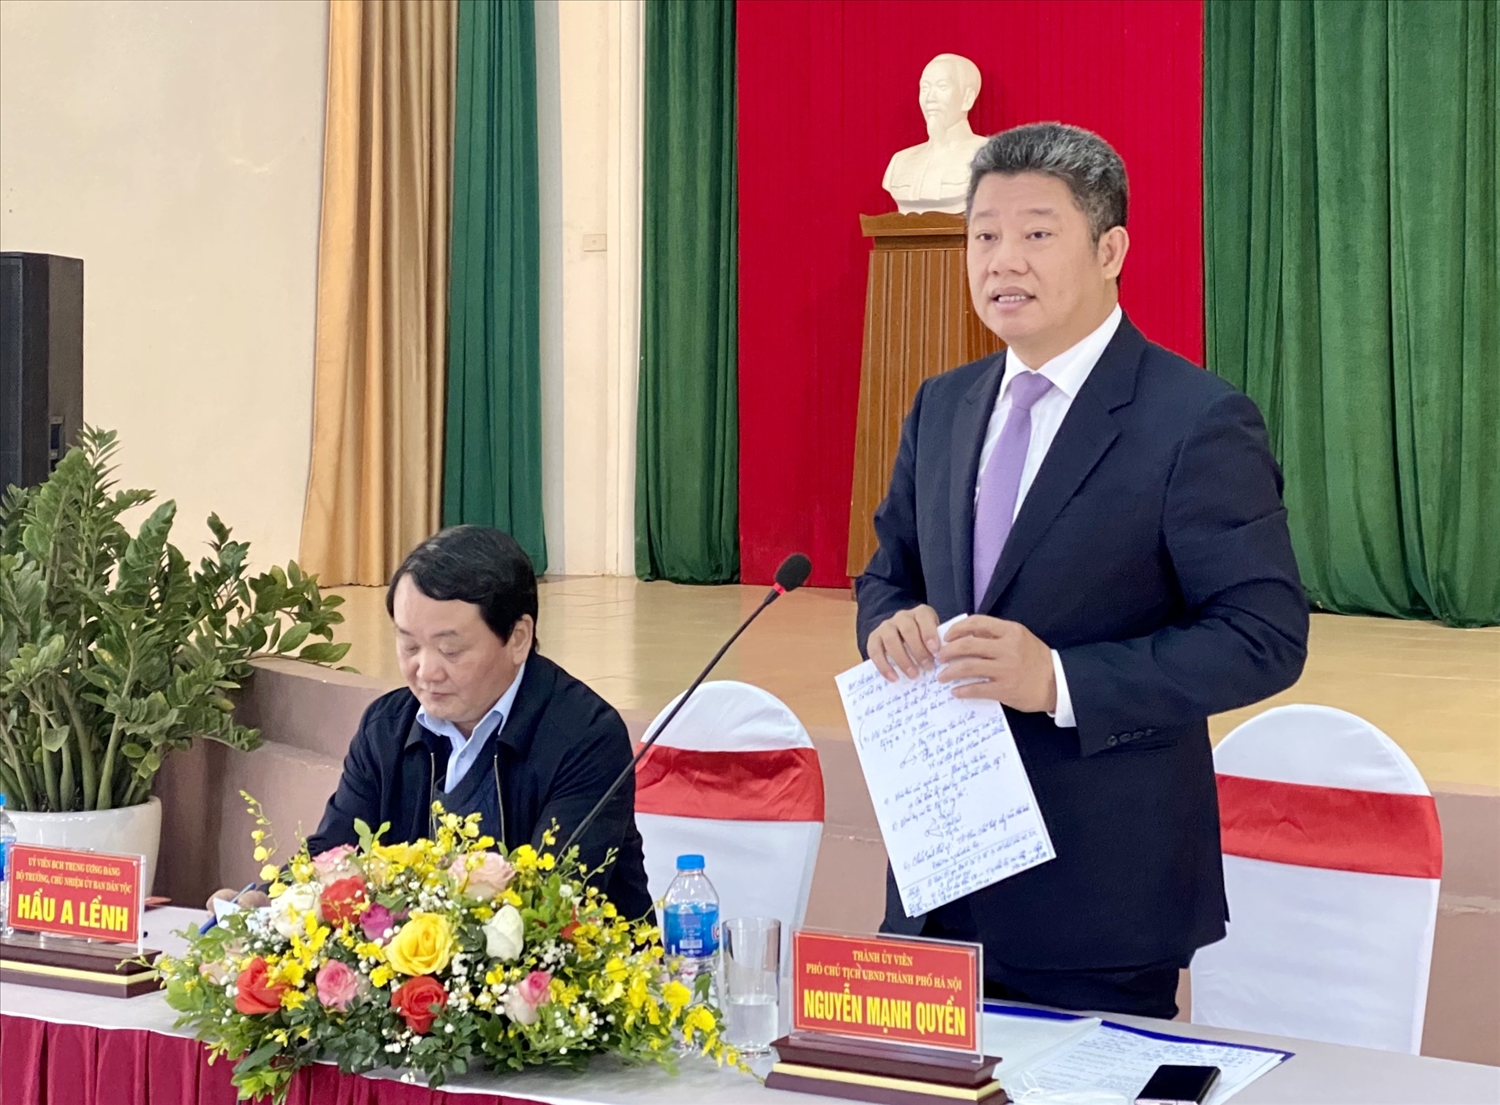 Phó Chủ tịch UBND TP. Hà Nội Nguyễn Mạnh Quyền khẳng định quyết tâm triển khai thực hiện hiệu quả Chương trình MTQG 